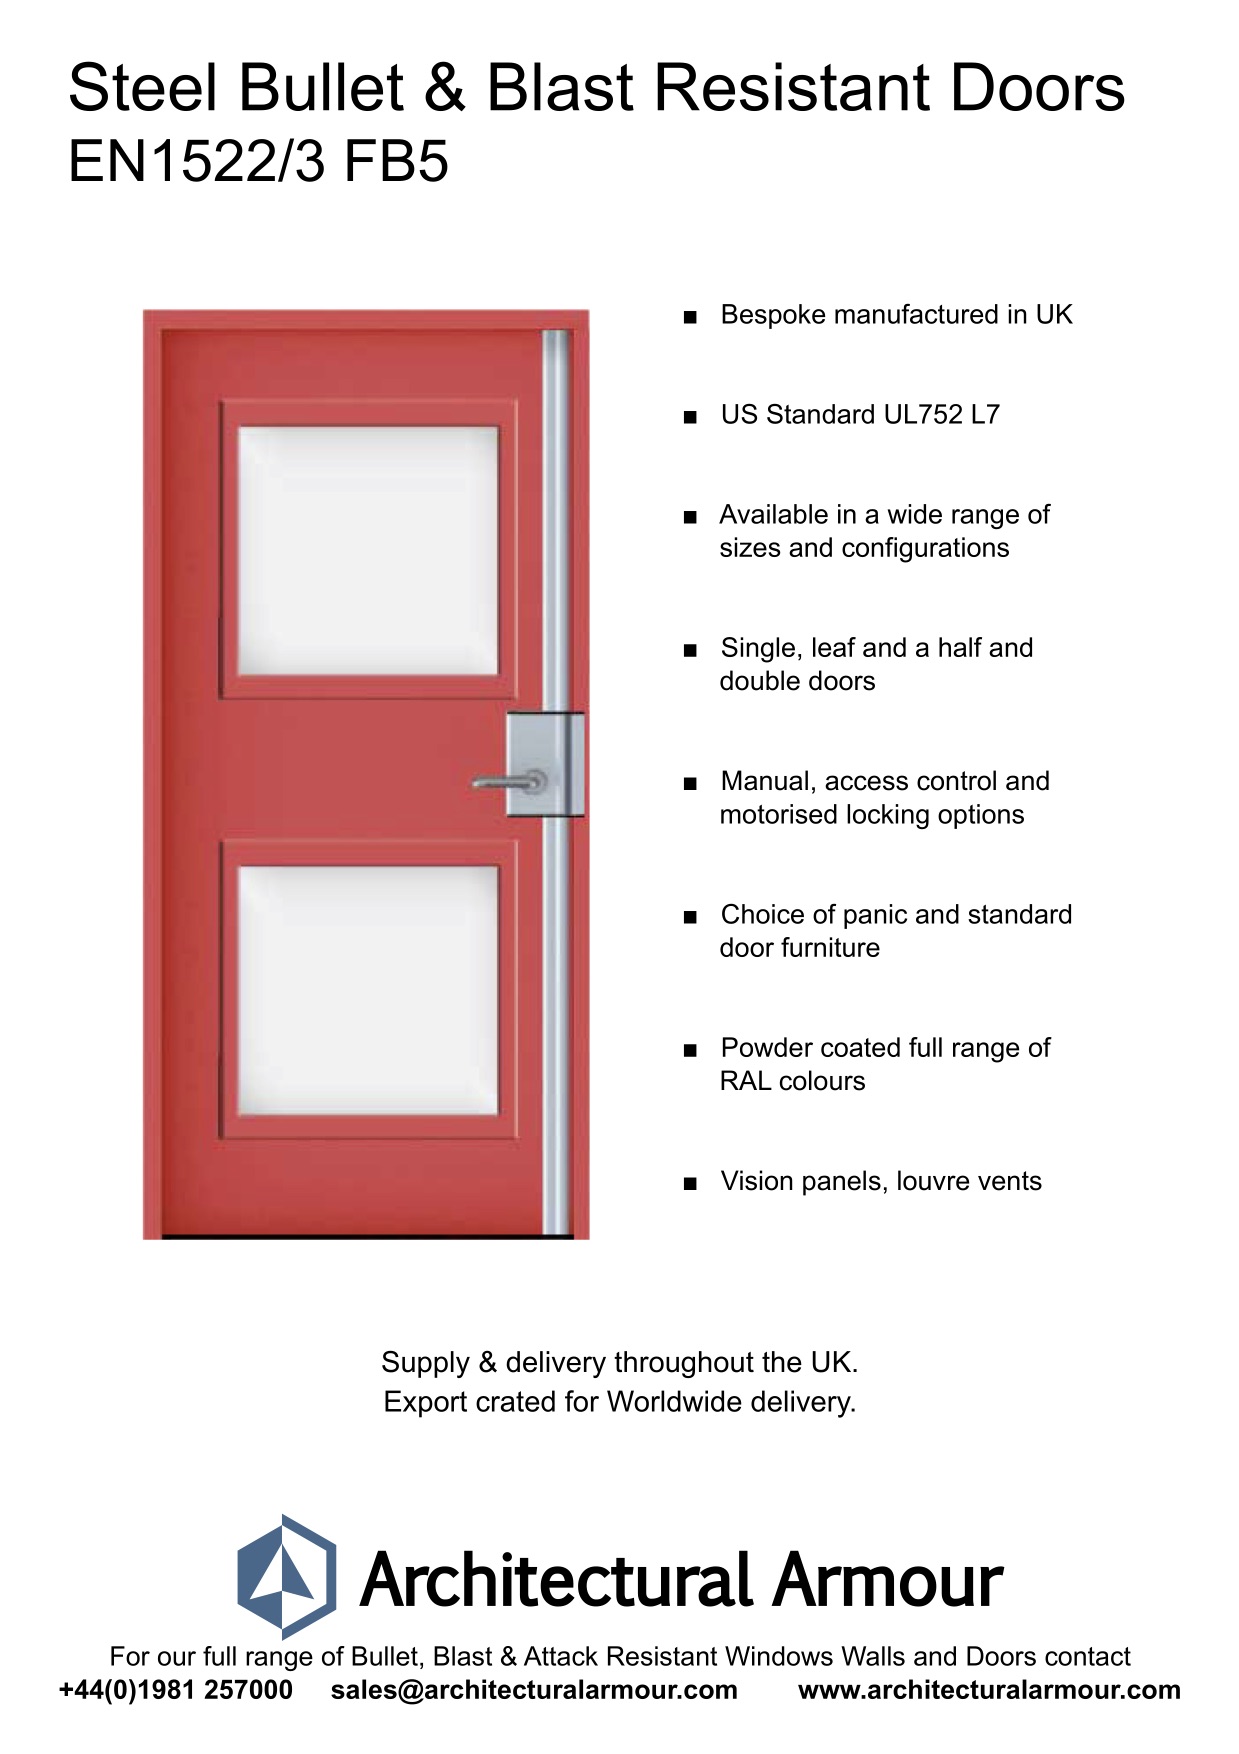 Bullet-and-Blast-Resistant-Steel-Doors-Vision-Panel-EN1522-3-FB5-BR5-UK